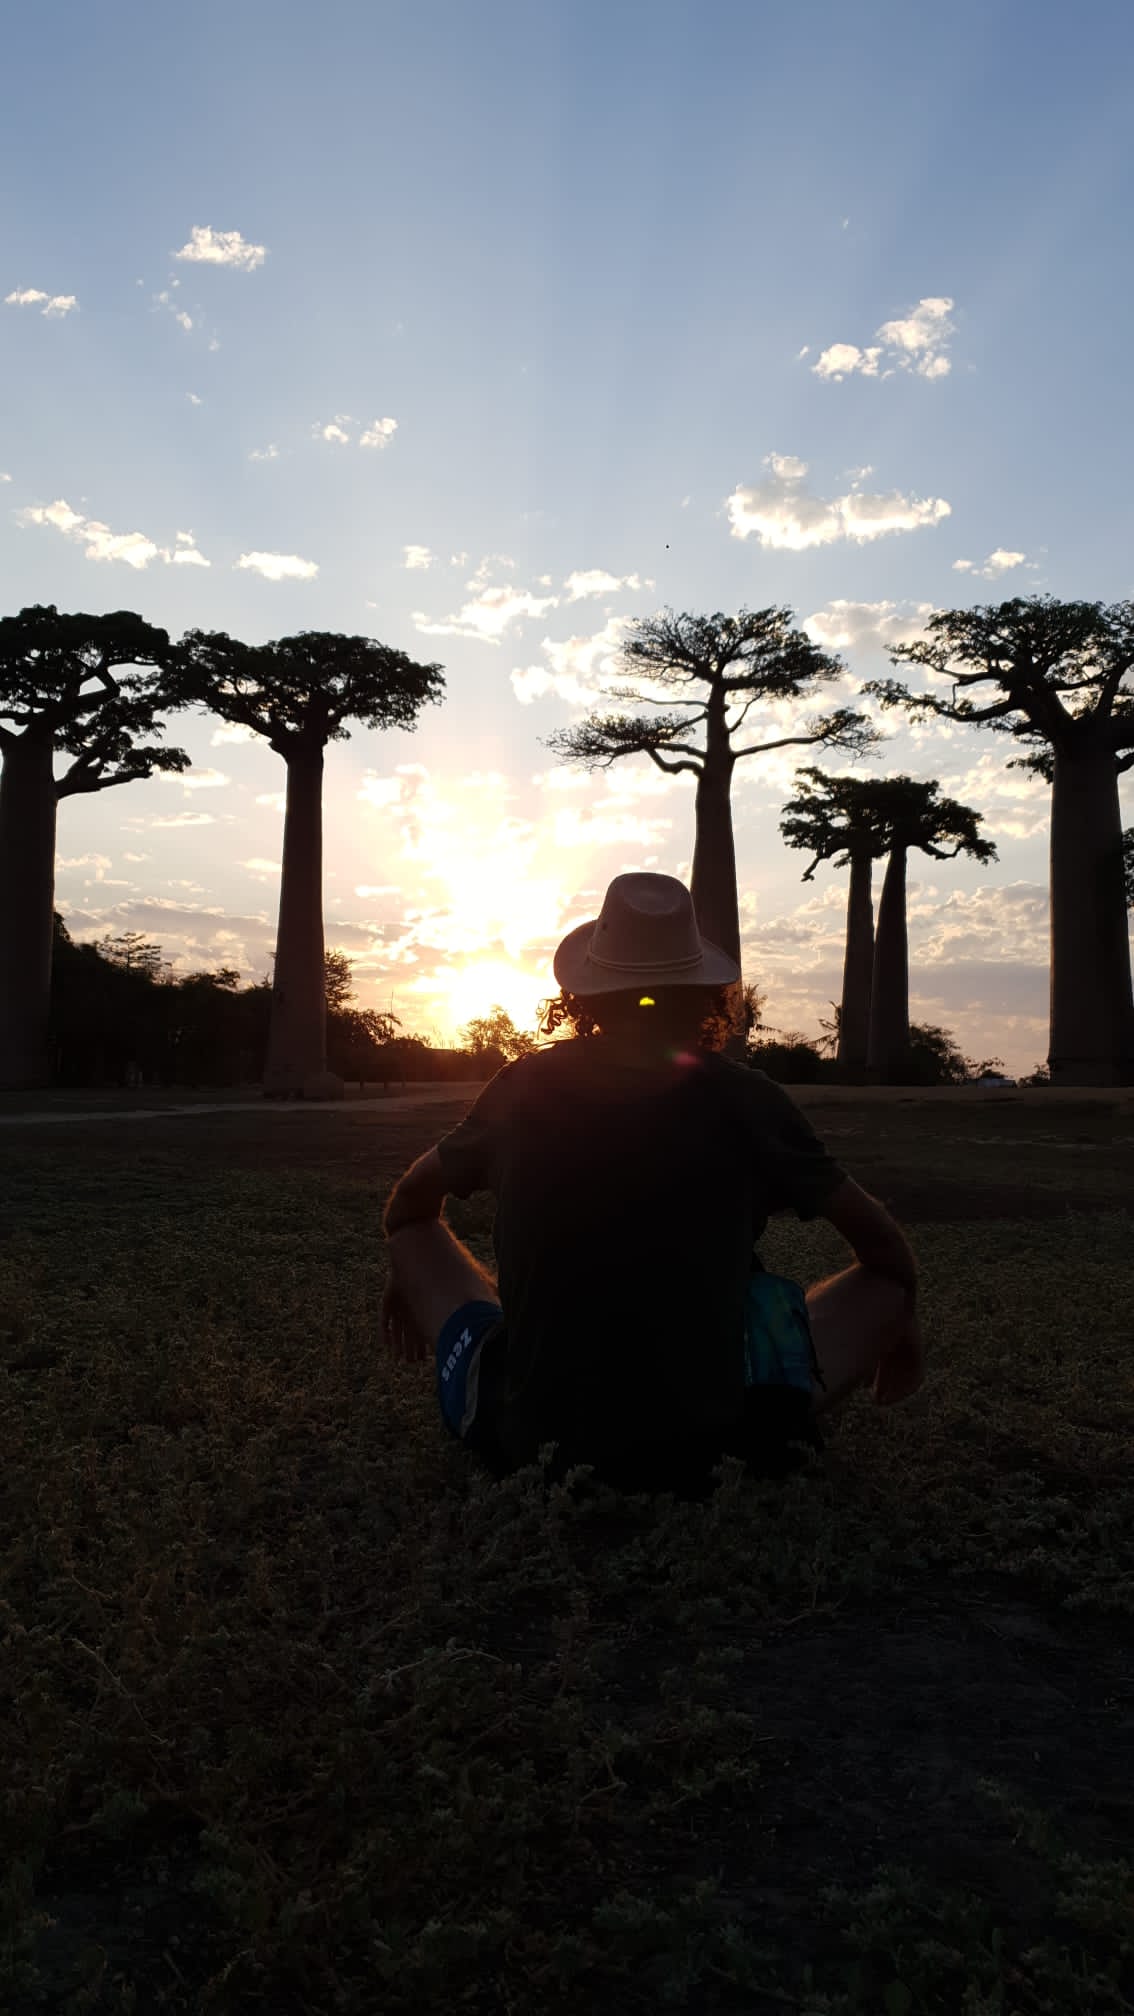 Sunset baobab